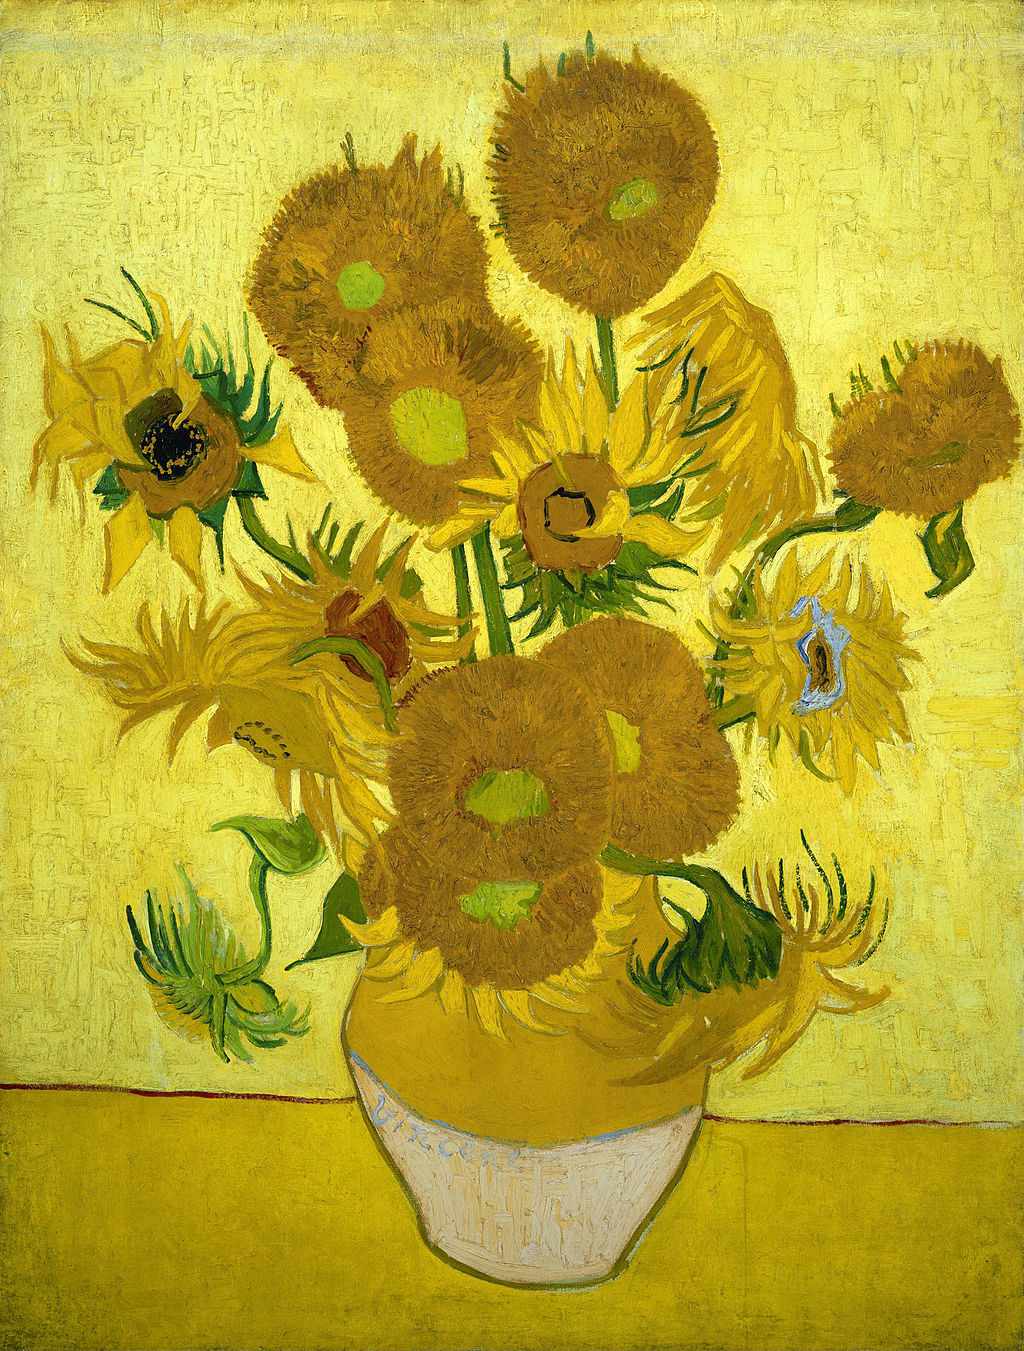 Obraz van Gogha - Słoneczniki